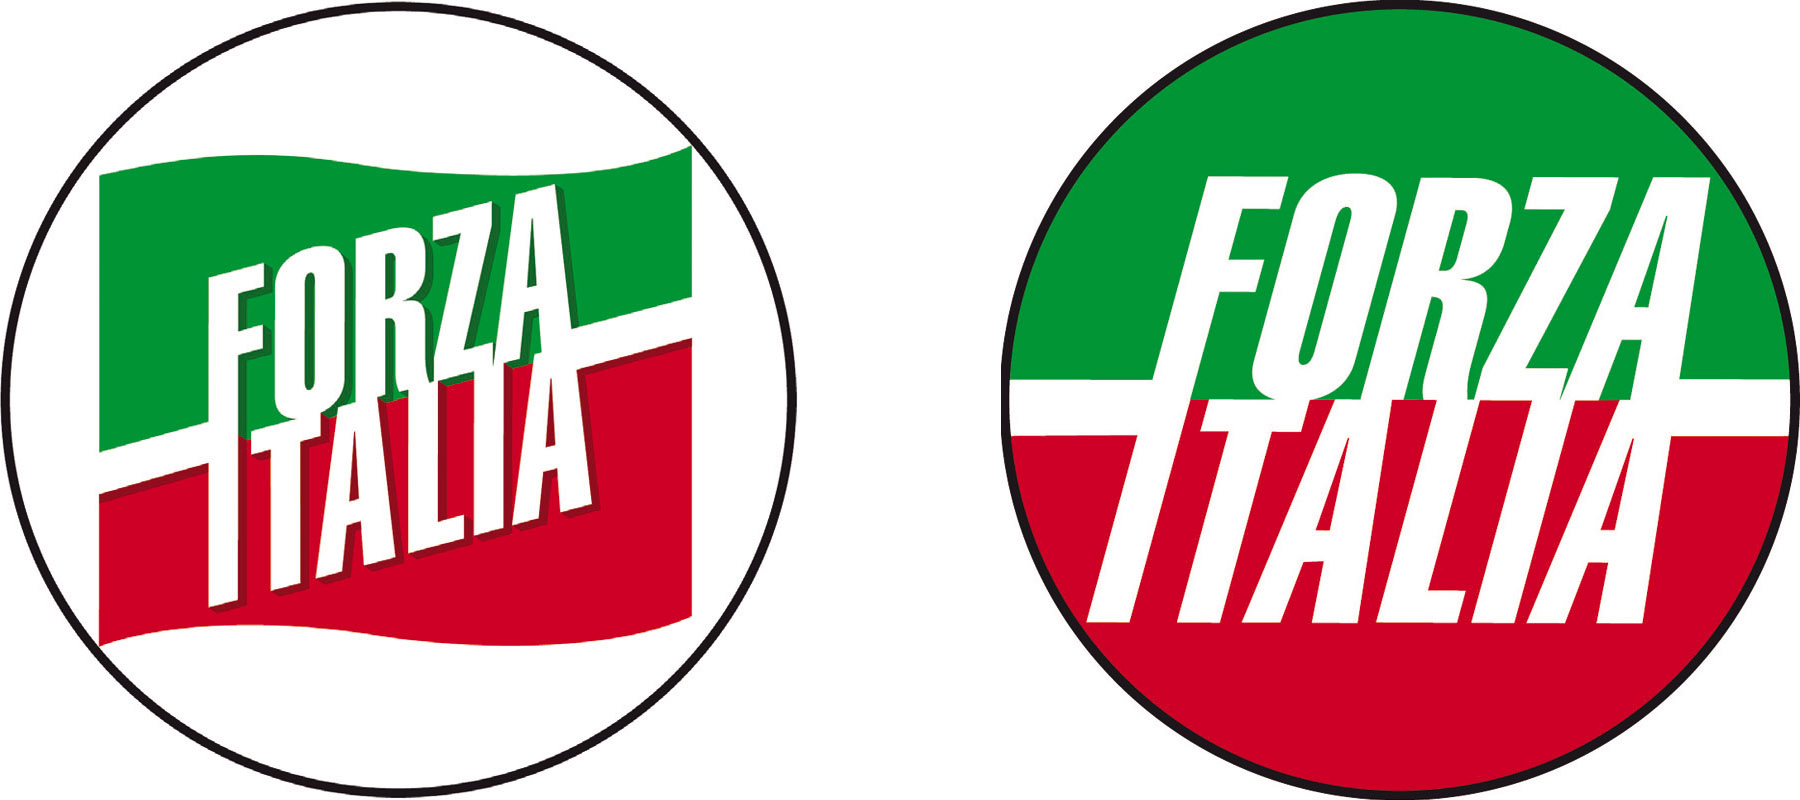 Il Simbolo Di Forza Italia Un Marchio Forte Ma Finira Con Berlusconi Poli Rchia